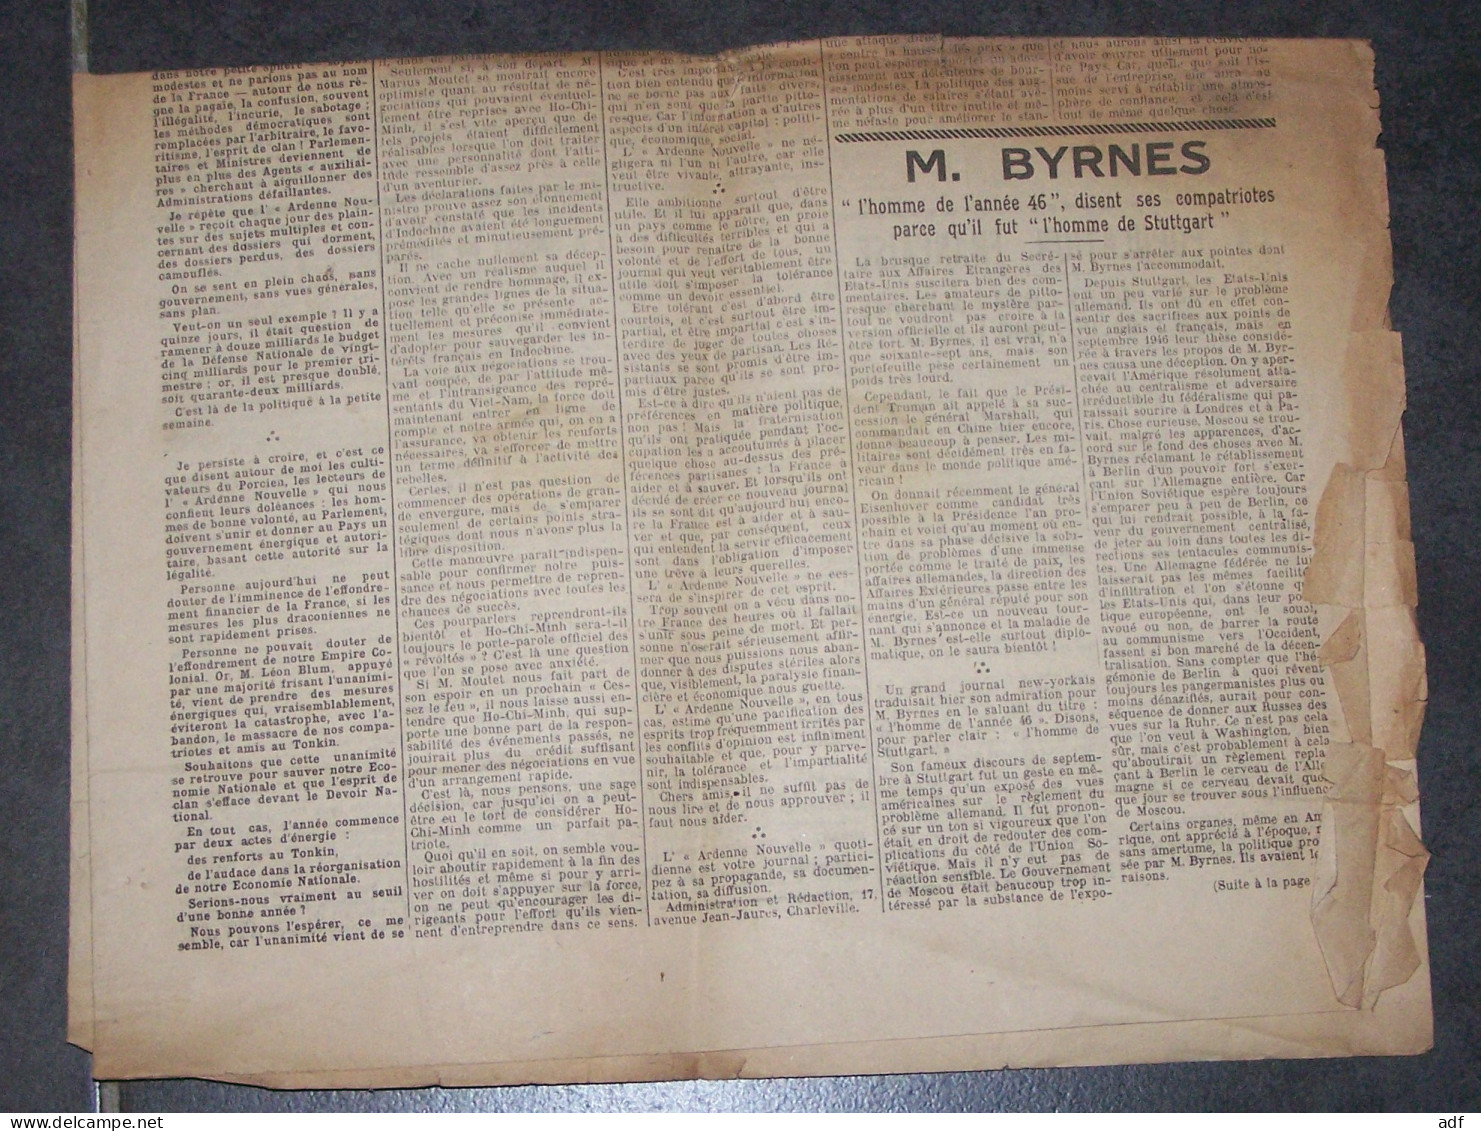 RARE " L'ARDENNE NOUVELLE " JOURNAL DE LA RESISTANCE ARDENNAISE, 1947, CHARLEVILLE, ARDENNES, DIRECTEUR COLONEL BIENFAIT